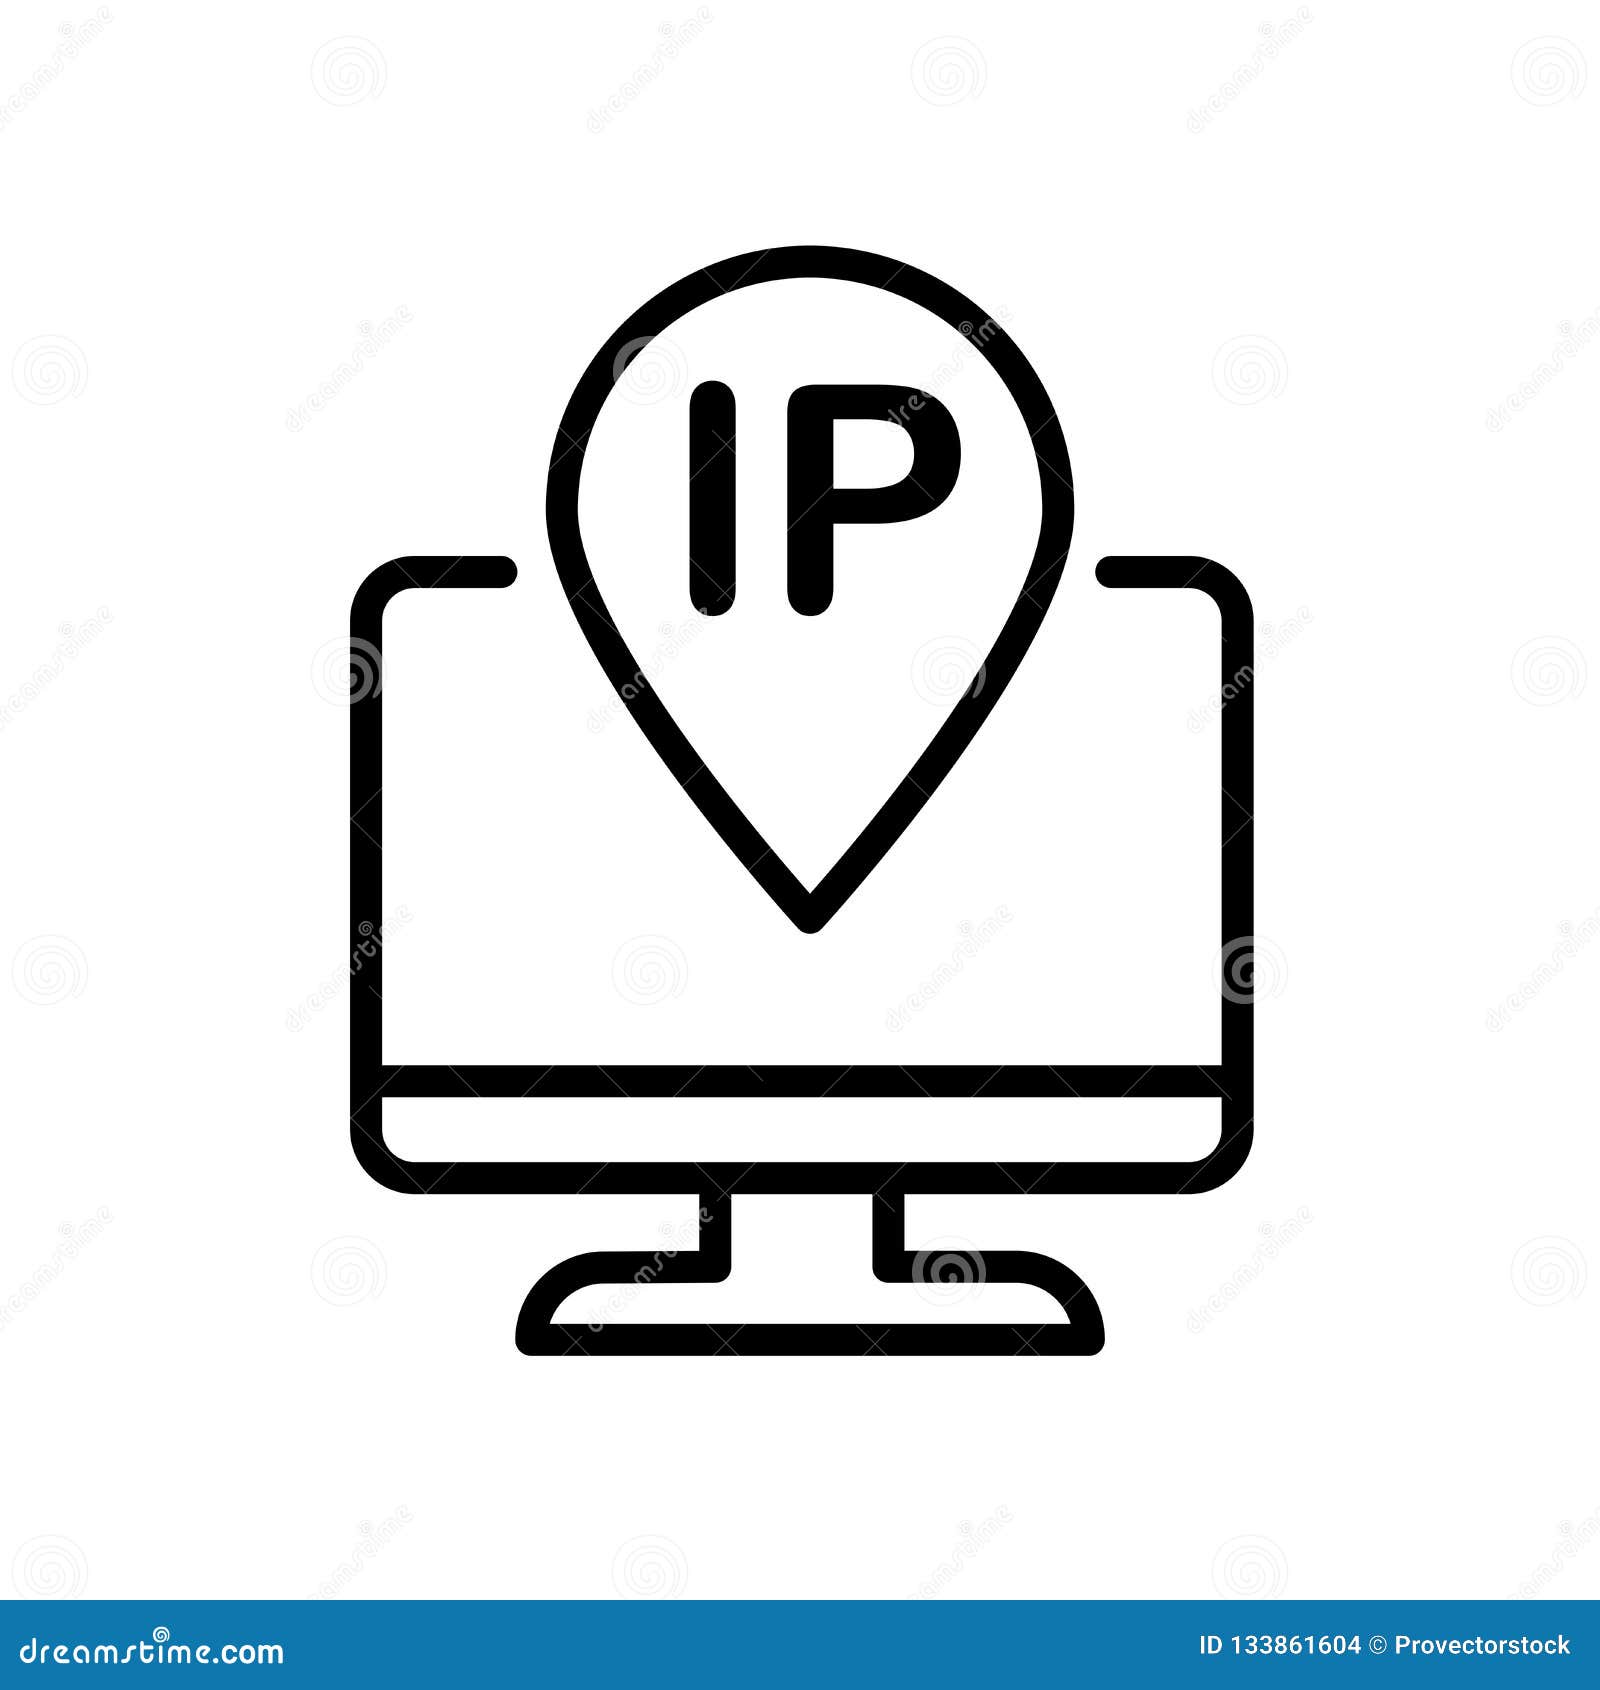 Địa chỉ IP biểu tượng: Một hình ảnh đại diện cho địa chỉ IP sẽ khiến cho bạn không thể nào bỏ qua. Đây sẽ là một trong những hình ảnh độc đáo và mới lạ giúp bạn tìm hiểu về địa chỉ IP. Hãy xem những biểu tượng này và bắt đầu khám phá sự thú vị của địa chỉ IP ngay hôm nay. 